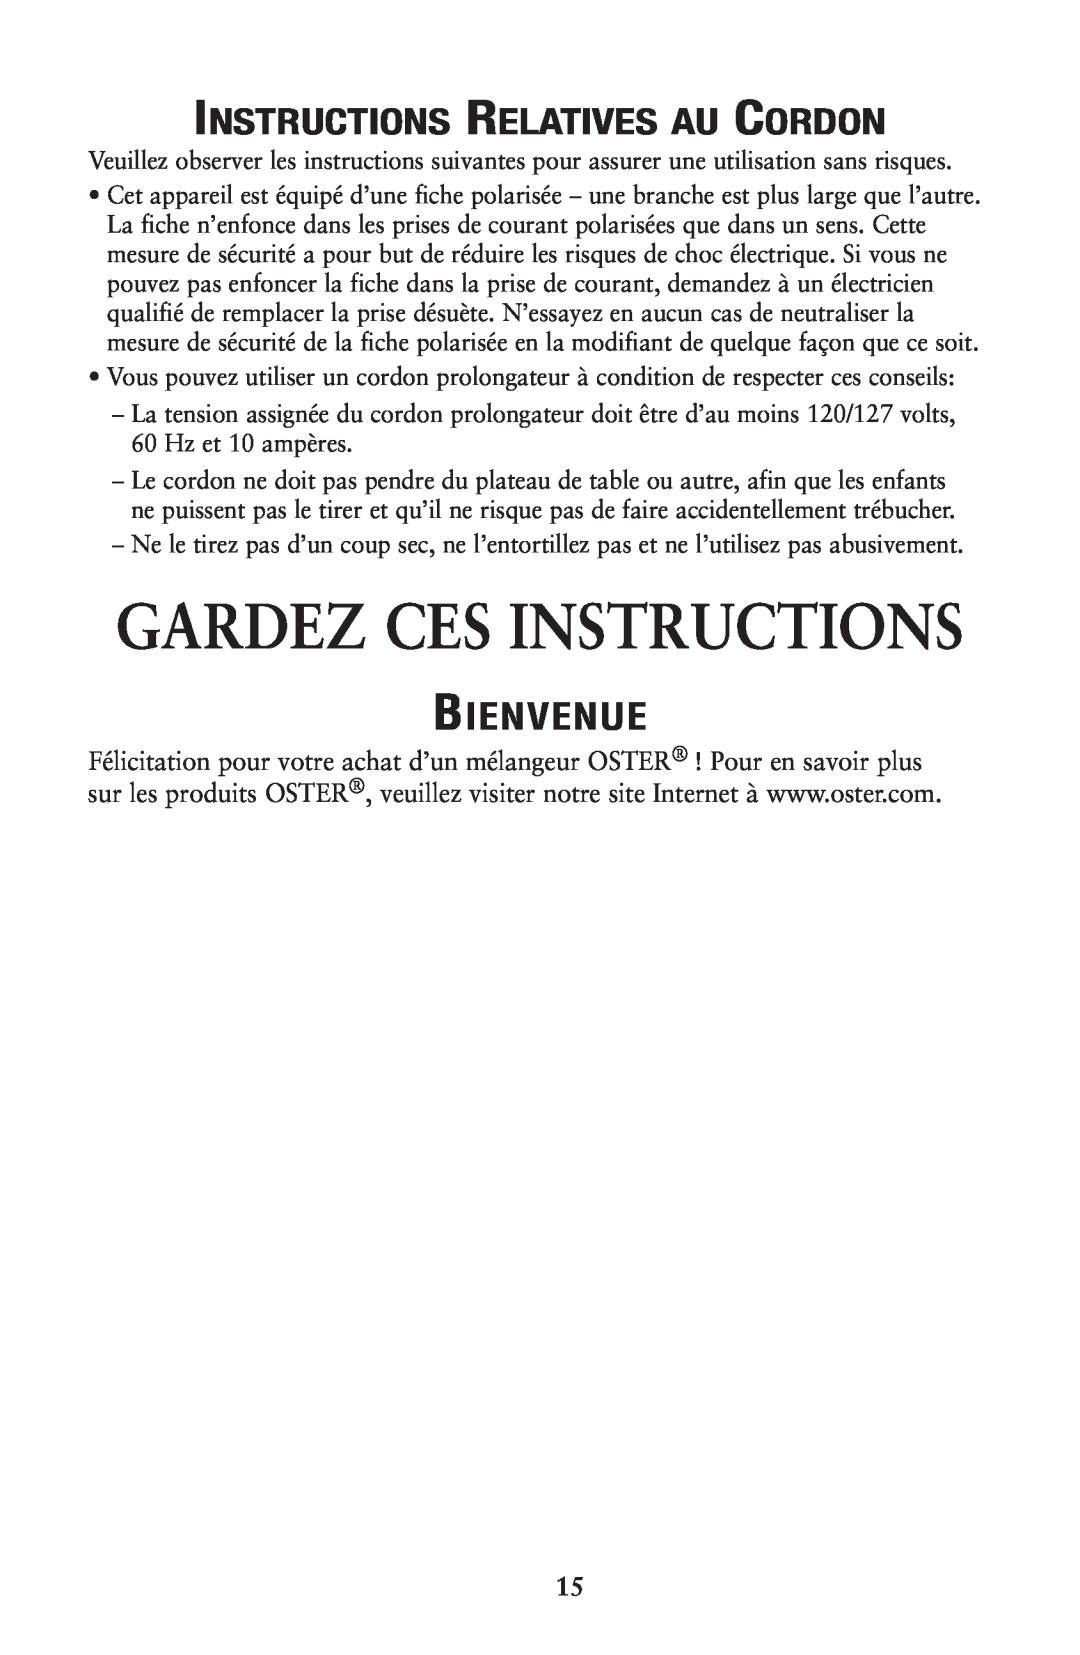 Oster 133086 user manual Gardez Ces Instructions, Instructions Relatives Au Cordon, Bienvenue 